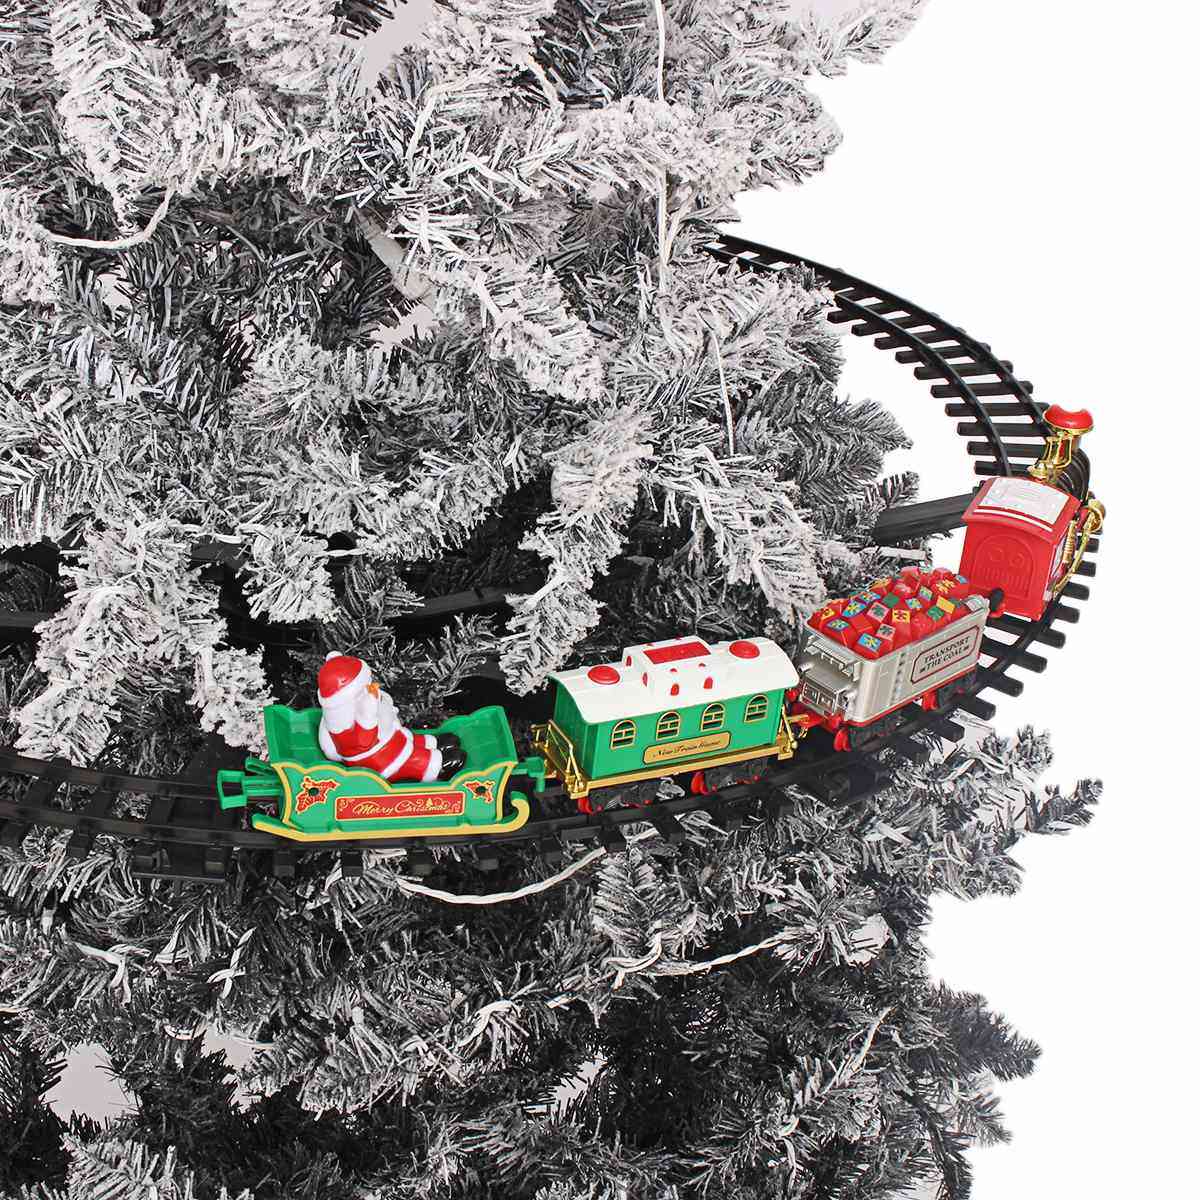 Elektrisk jernbane kan installeres på juletræet med lys